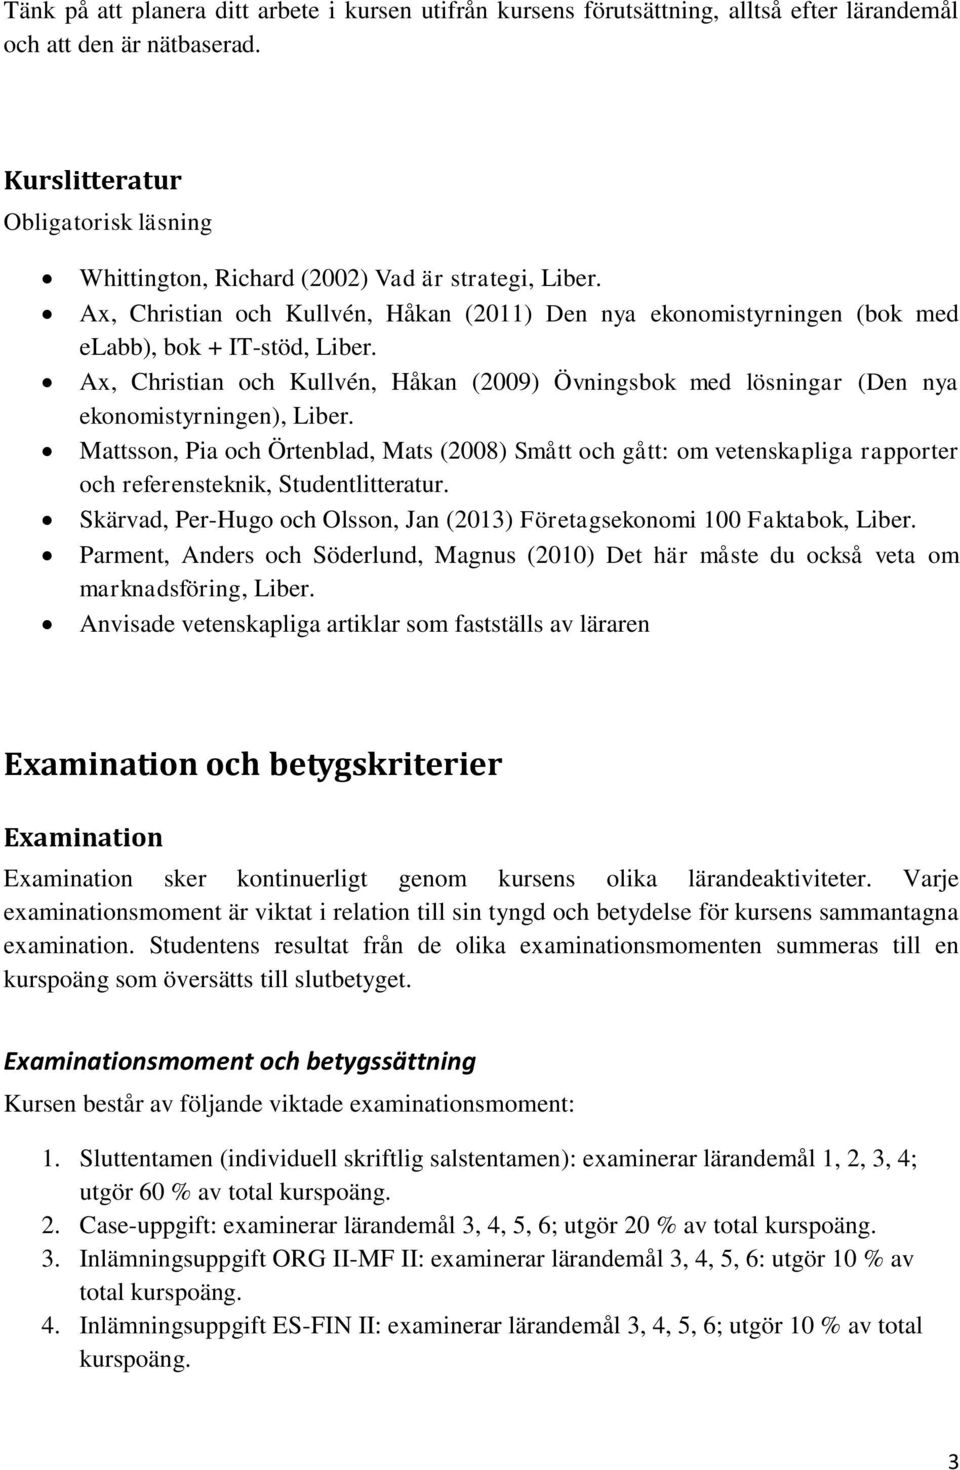 Ax, Christian och Kullvén, Håkan (2009) Övningsbok med lösningar (Den nya ekonomistyrningen), Liber.